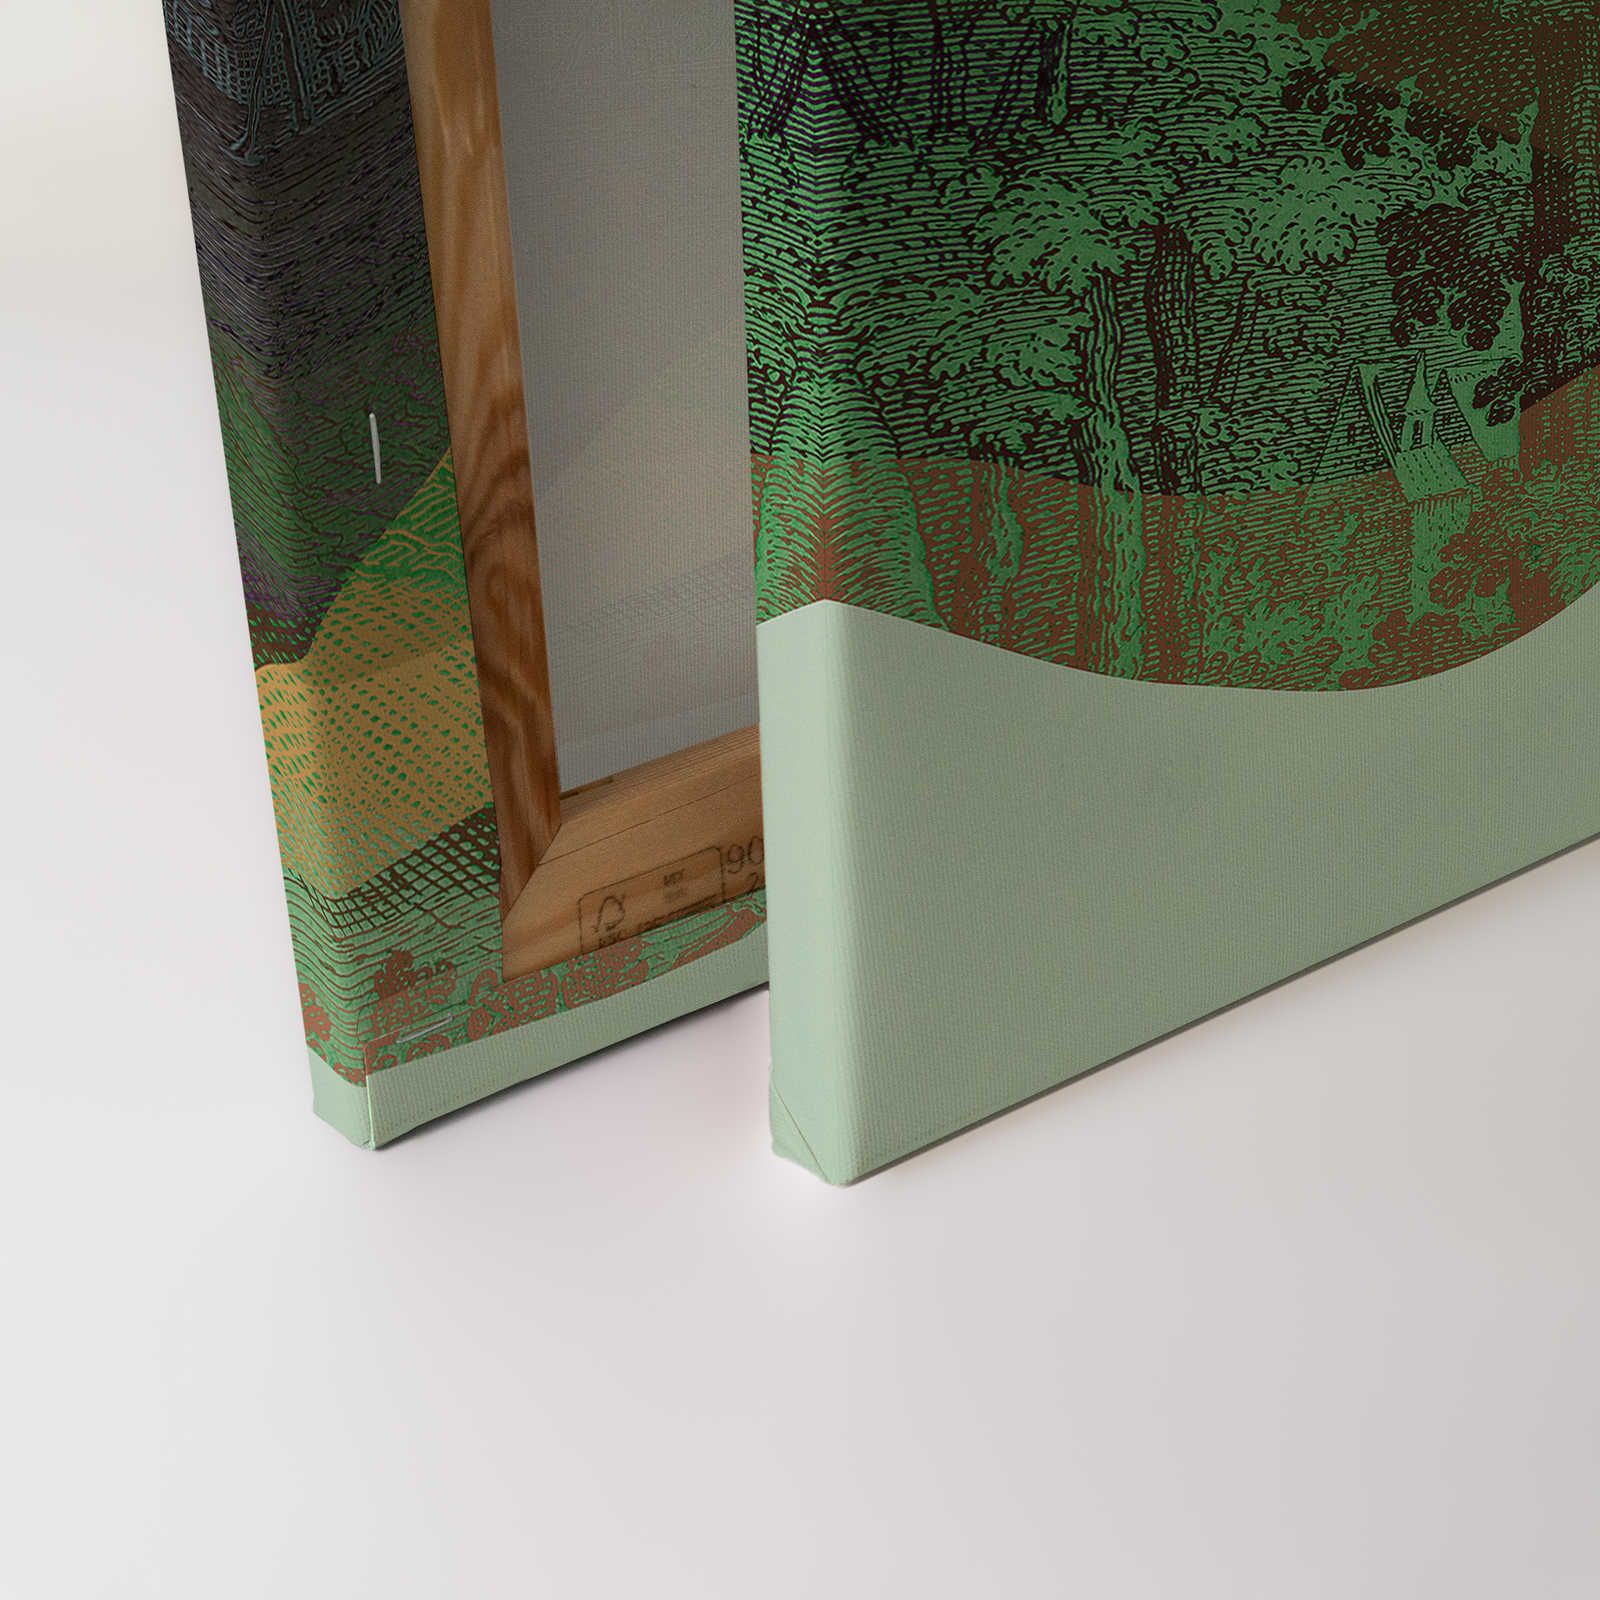             Magic Mountain 3 - Quadro su tela con montagne verdi dal design moderno - 0,90 m x 0,60 m
        